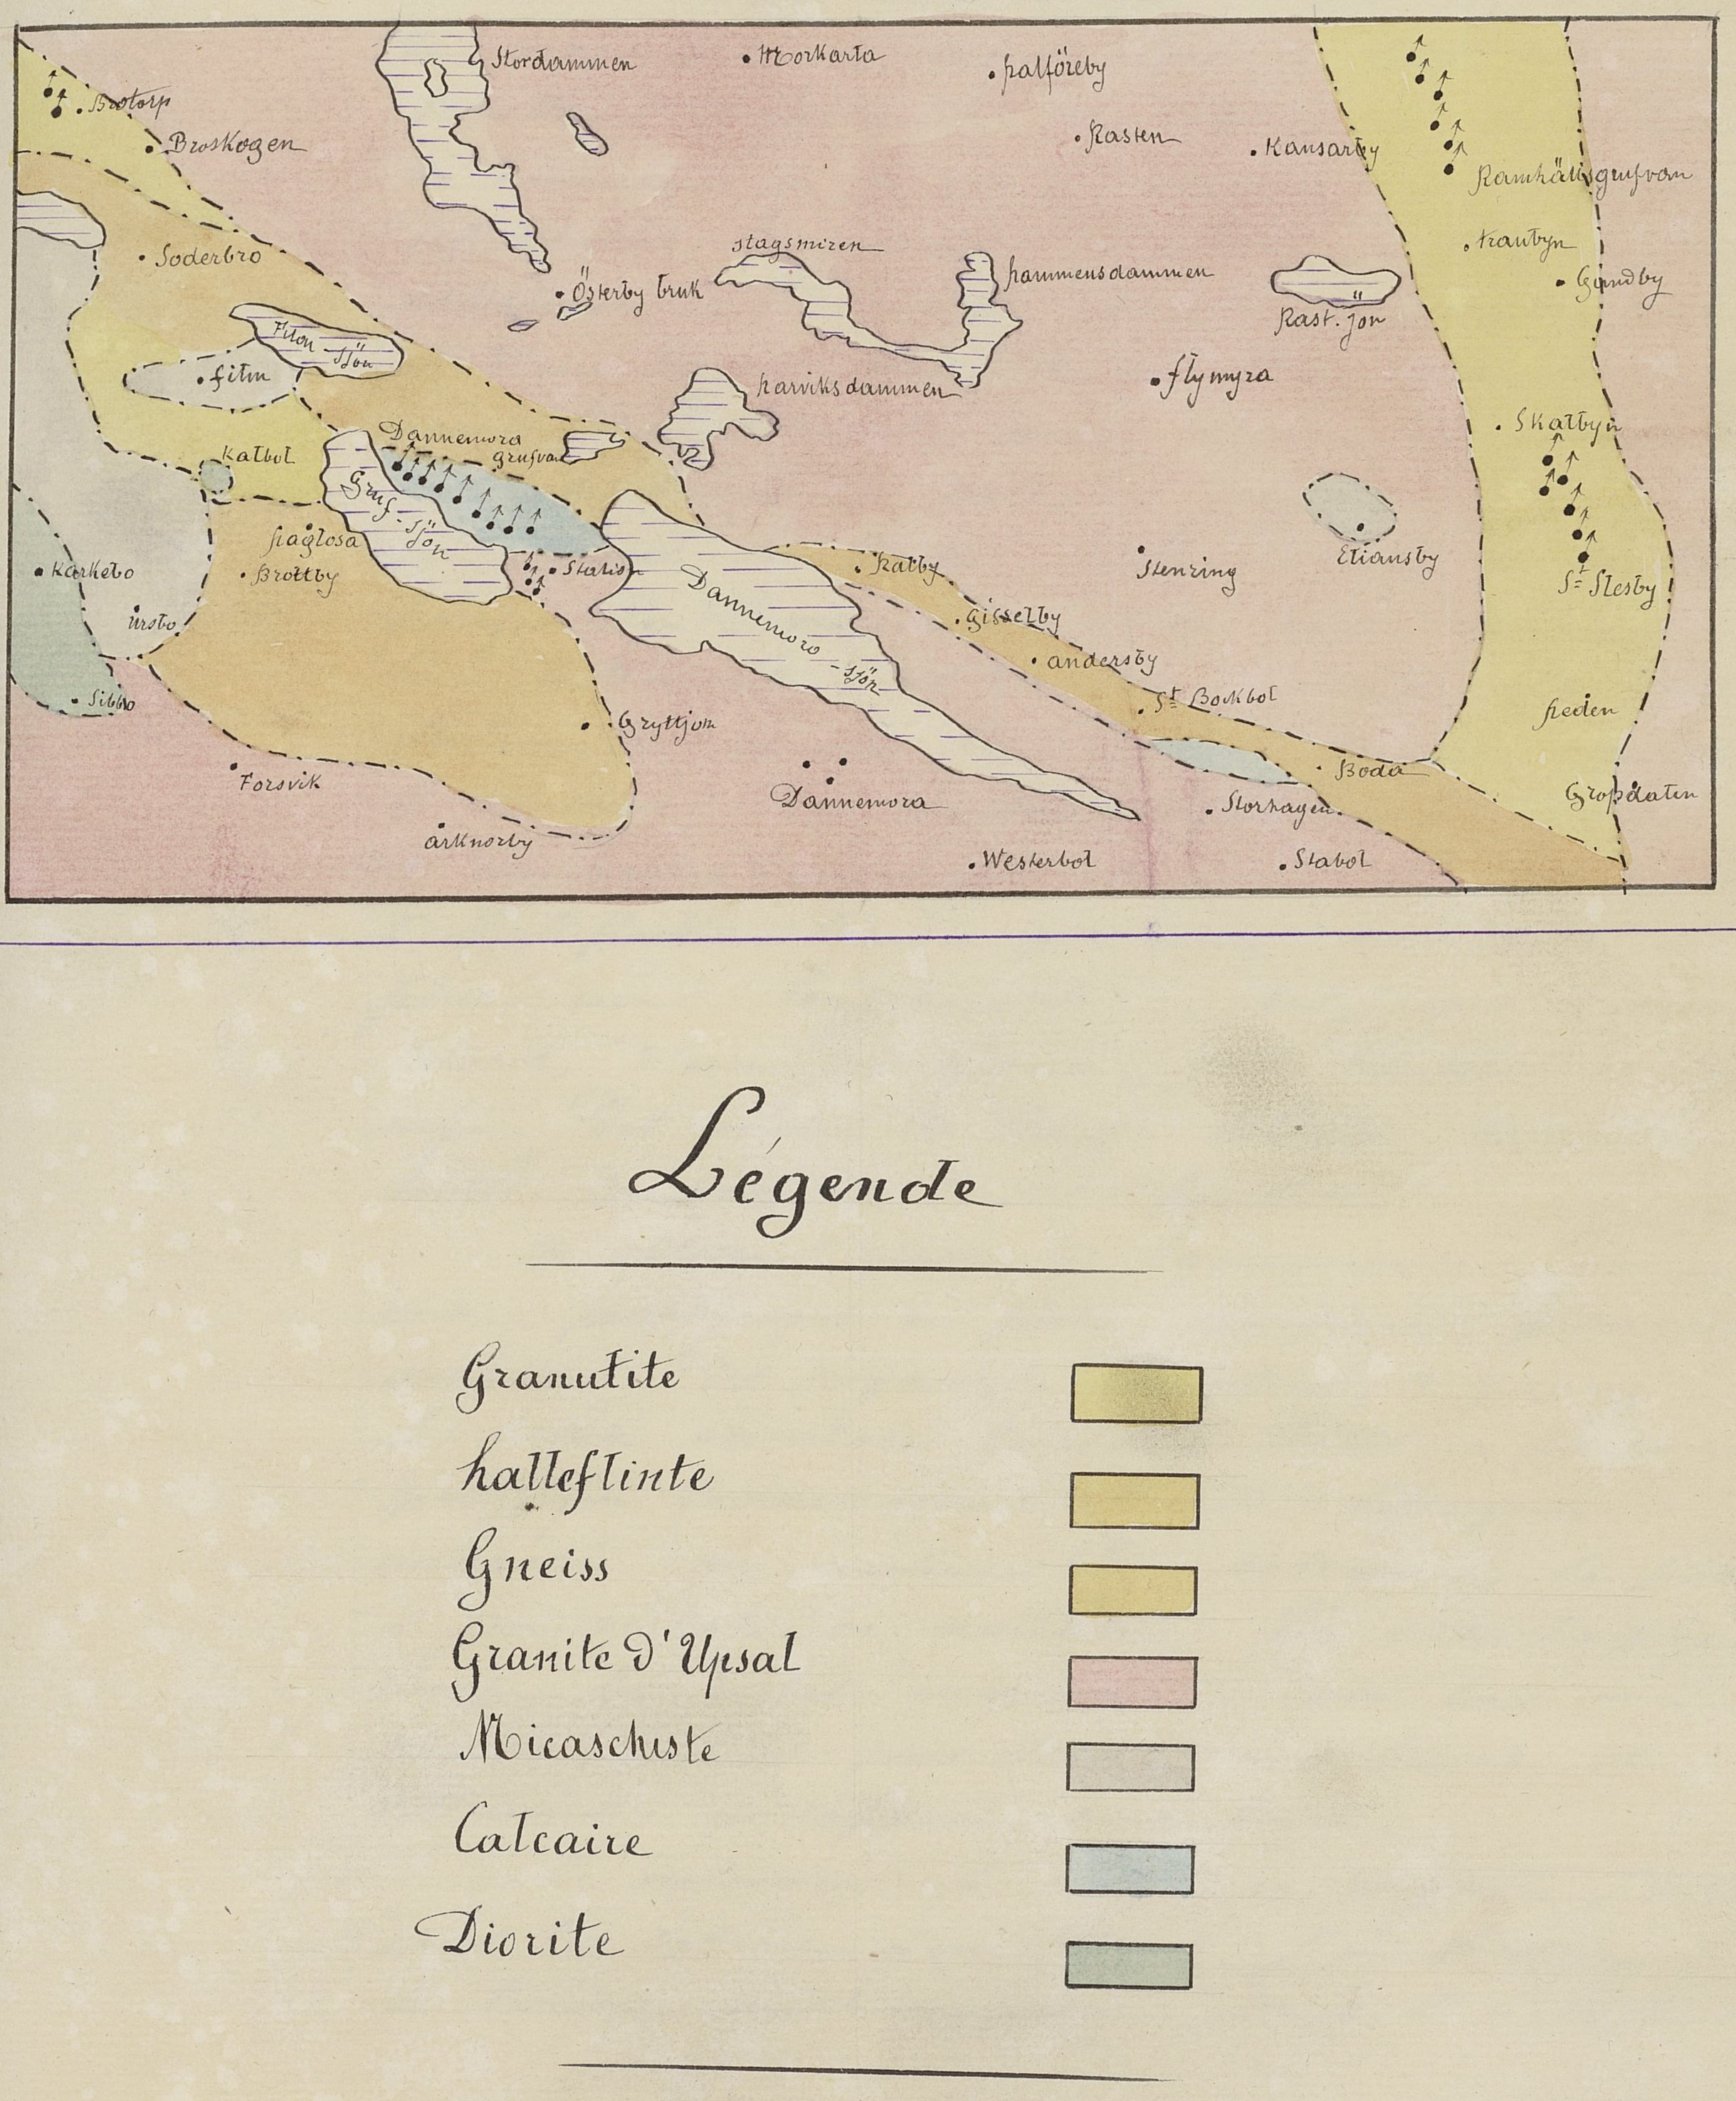 Carte géologique de Danemora, Henri Roux de Bézieux, 1883, J 1883 705)